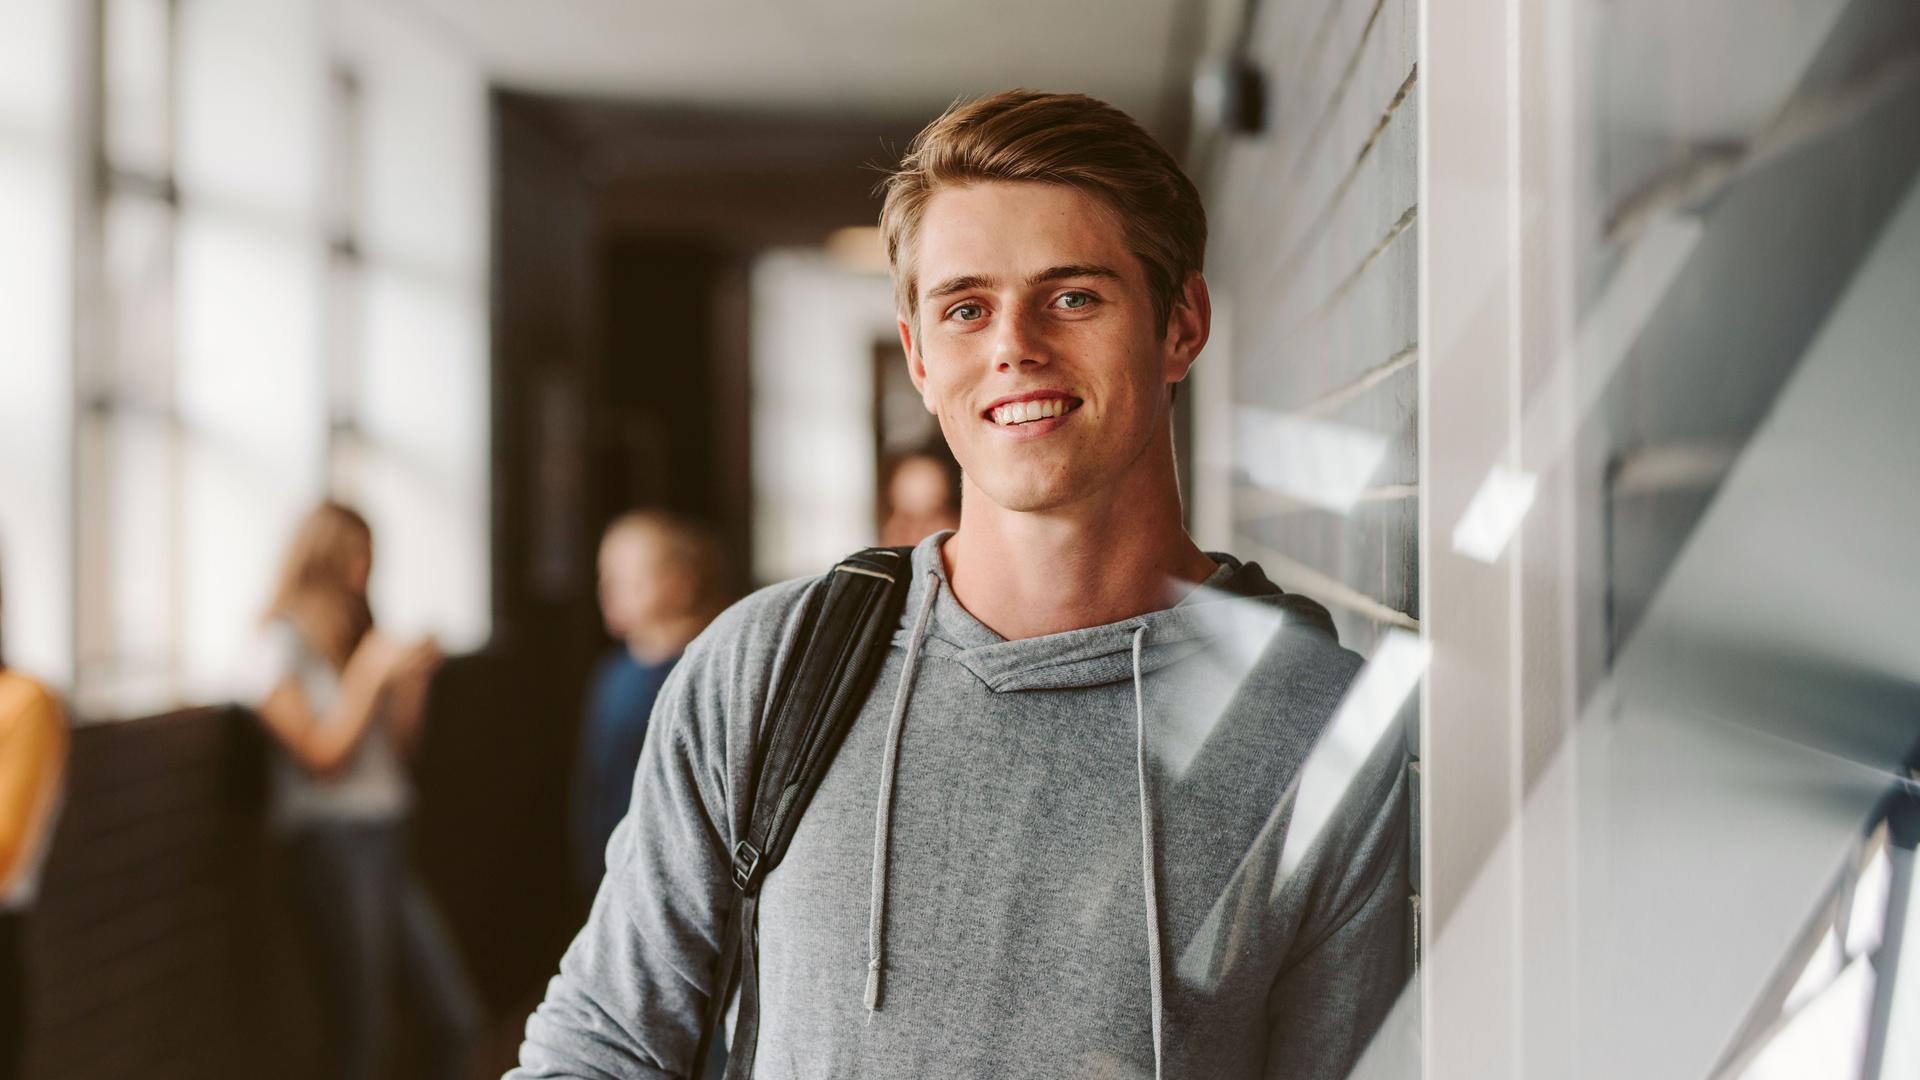 Ein sportlich gekleideter  junger Mann lehnt an einer Wand und lächelt in die Kamera. Im Hintergund stehen weitere Schüler in einem Flur.